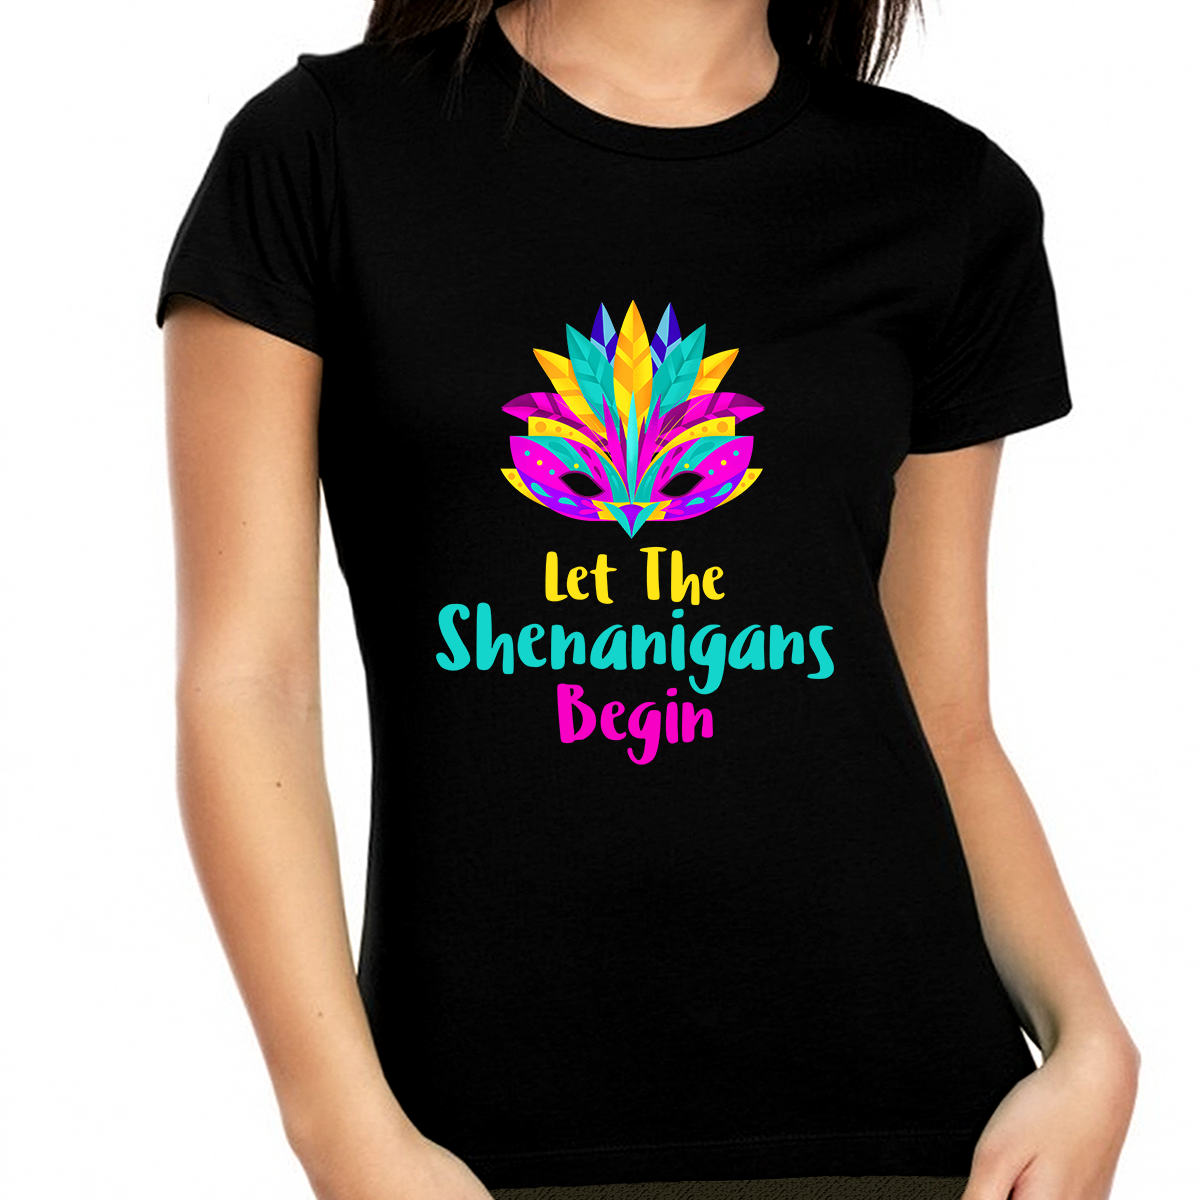 Shenanigans Shirt Fun Mardi Gras Shirts for Women Mardi Gras Shirt New Orleans Mardi Gras Outfit for Women